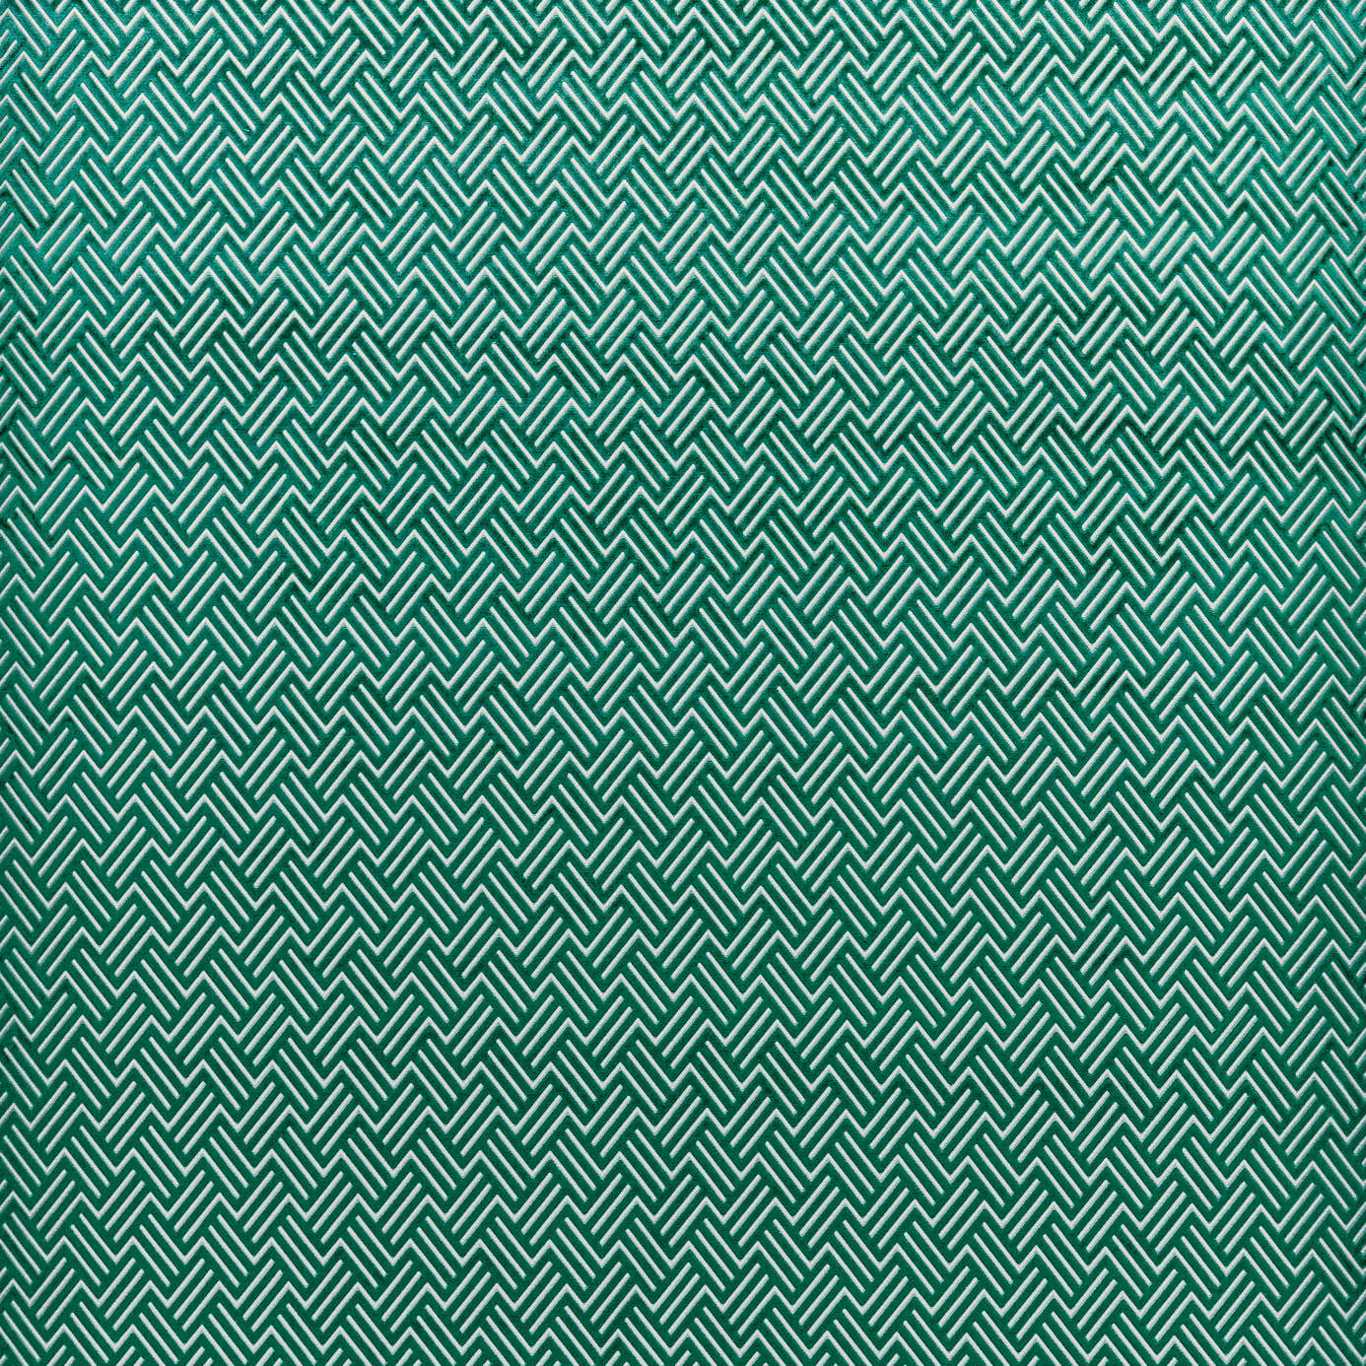 Triadic Emerald Fabric by HAR